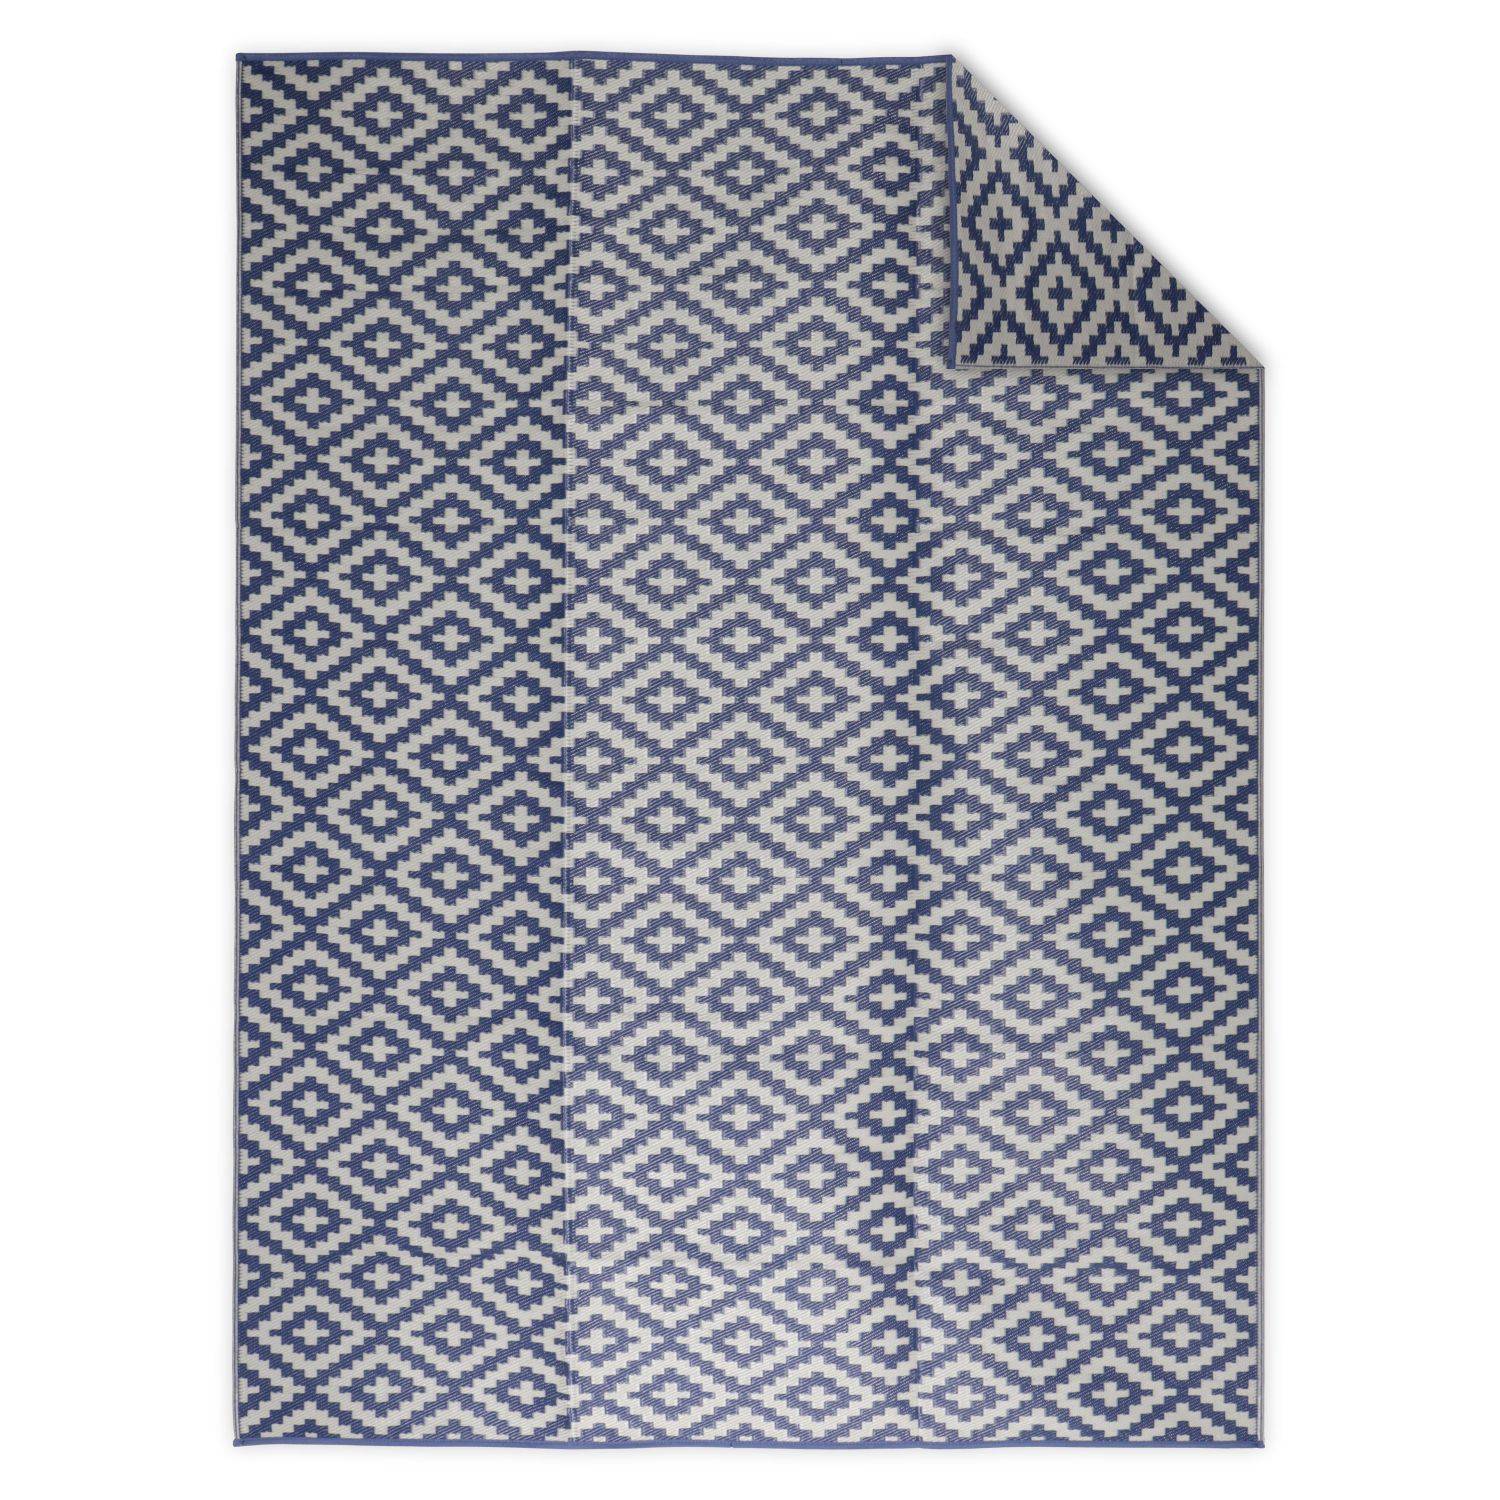 Tapete exterior 270x360cm STOCKHOLM - Rectangular, padrão diamante azul / bege, jacquard, reversível, interior / exterior, Photo1